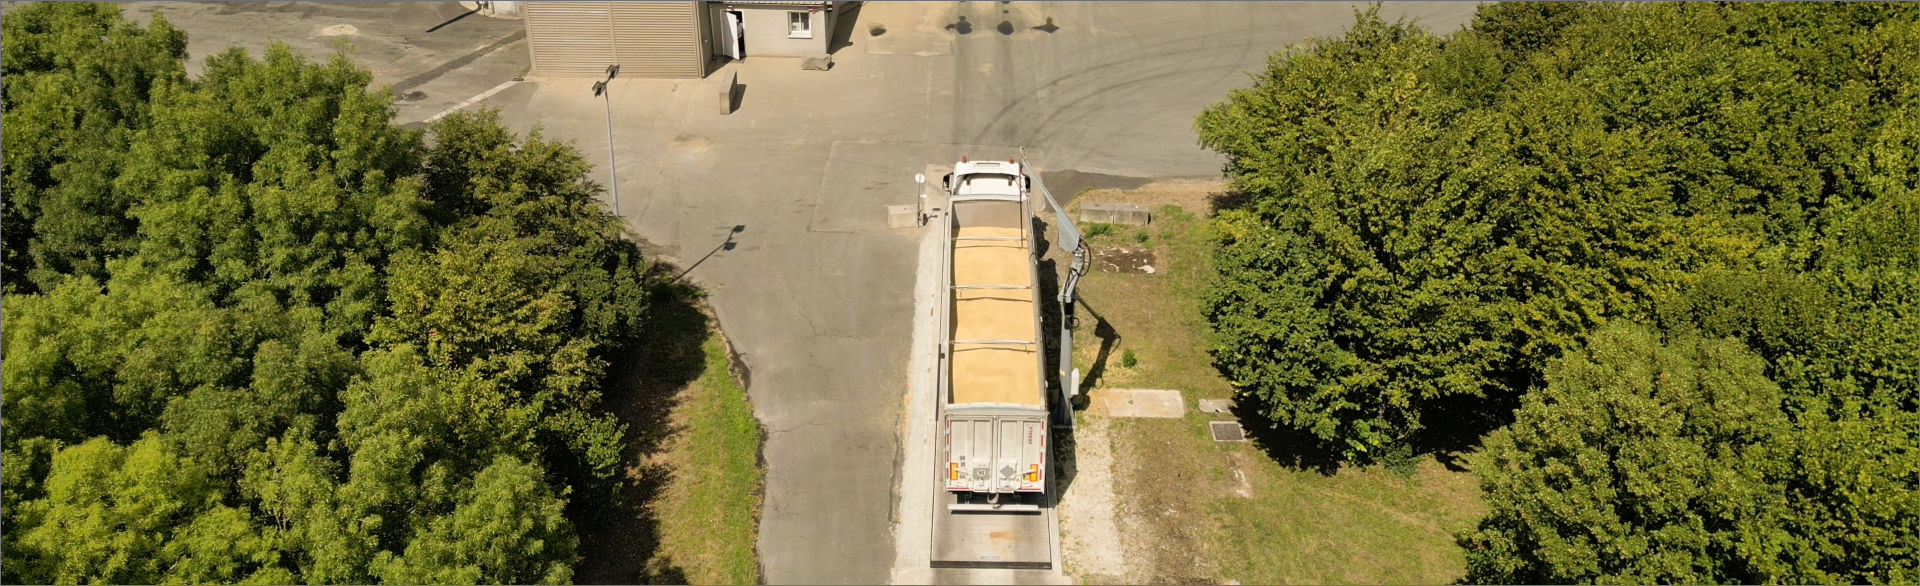 Image d'un camion remplit de blé